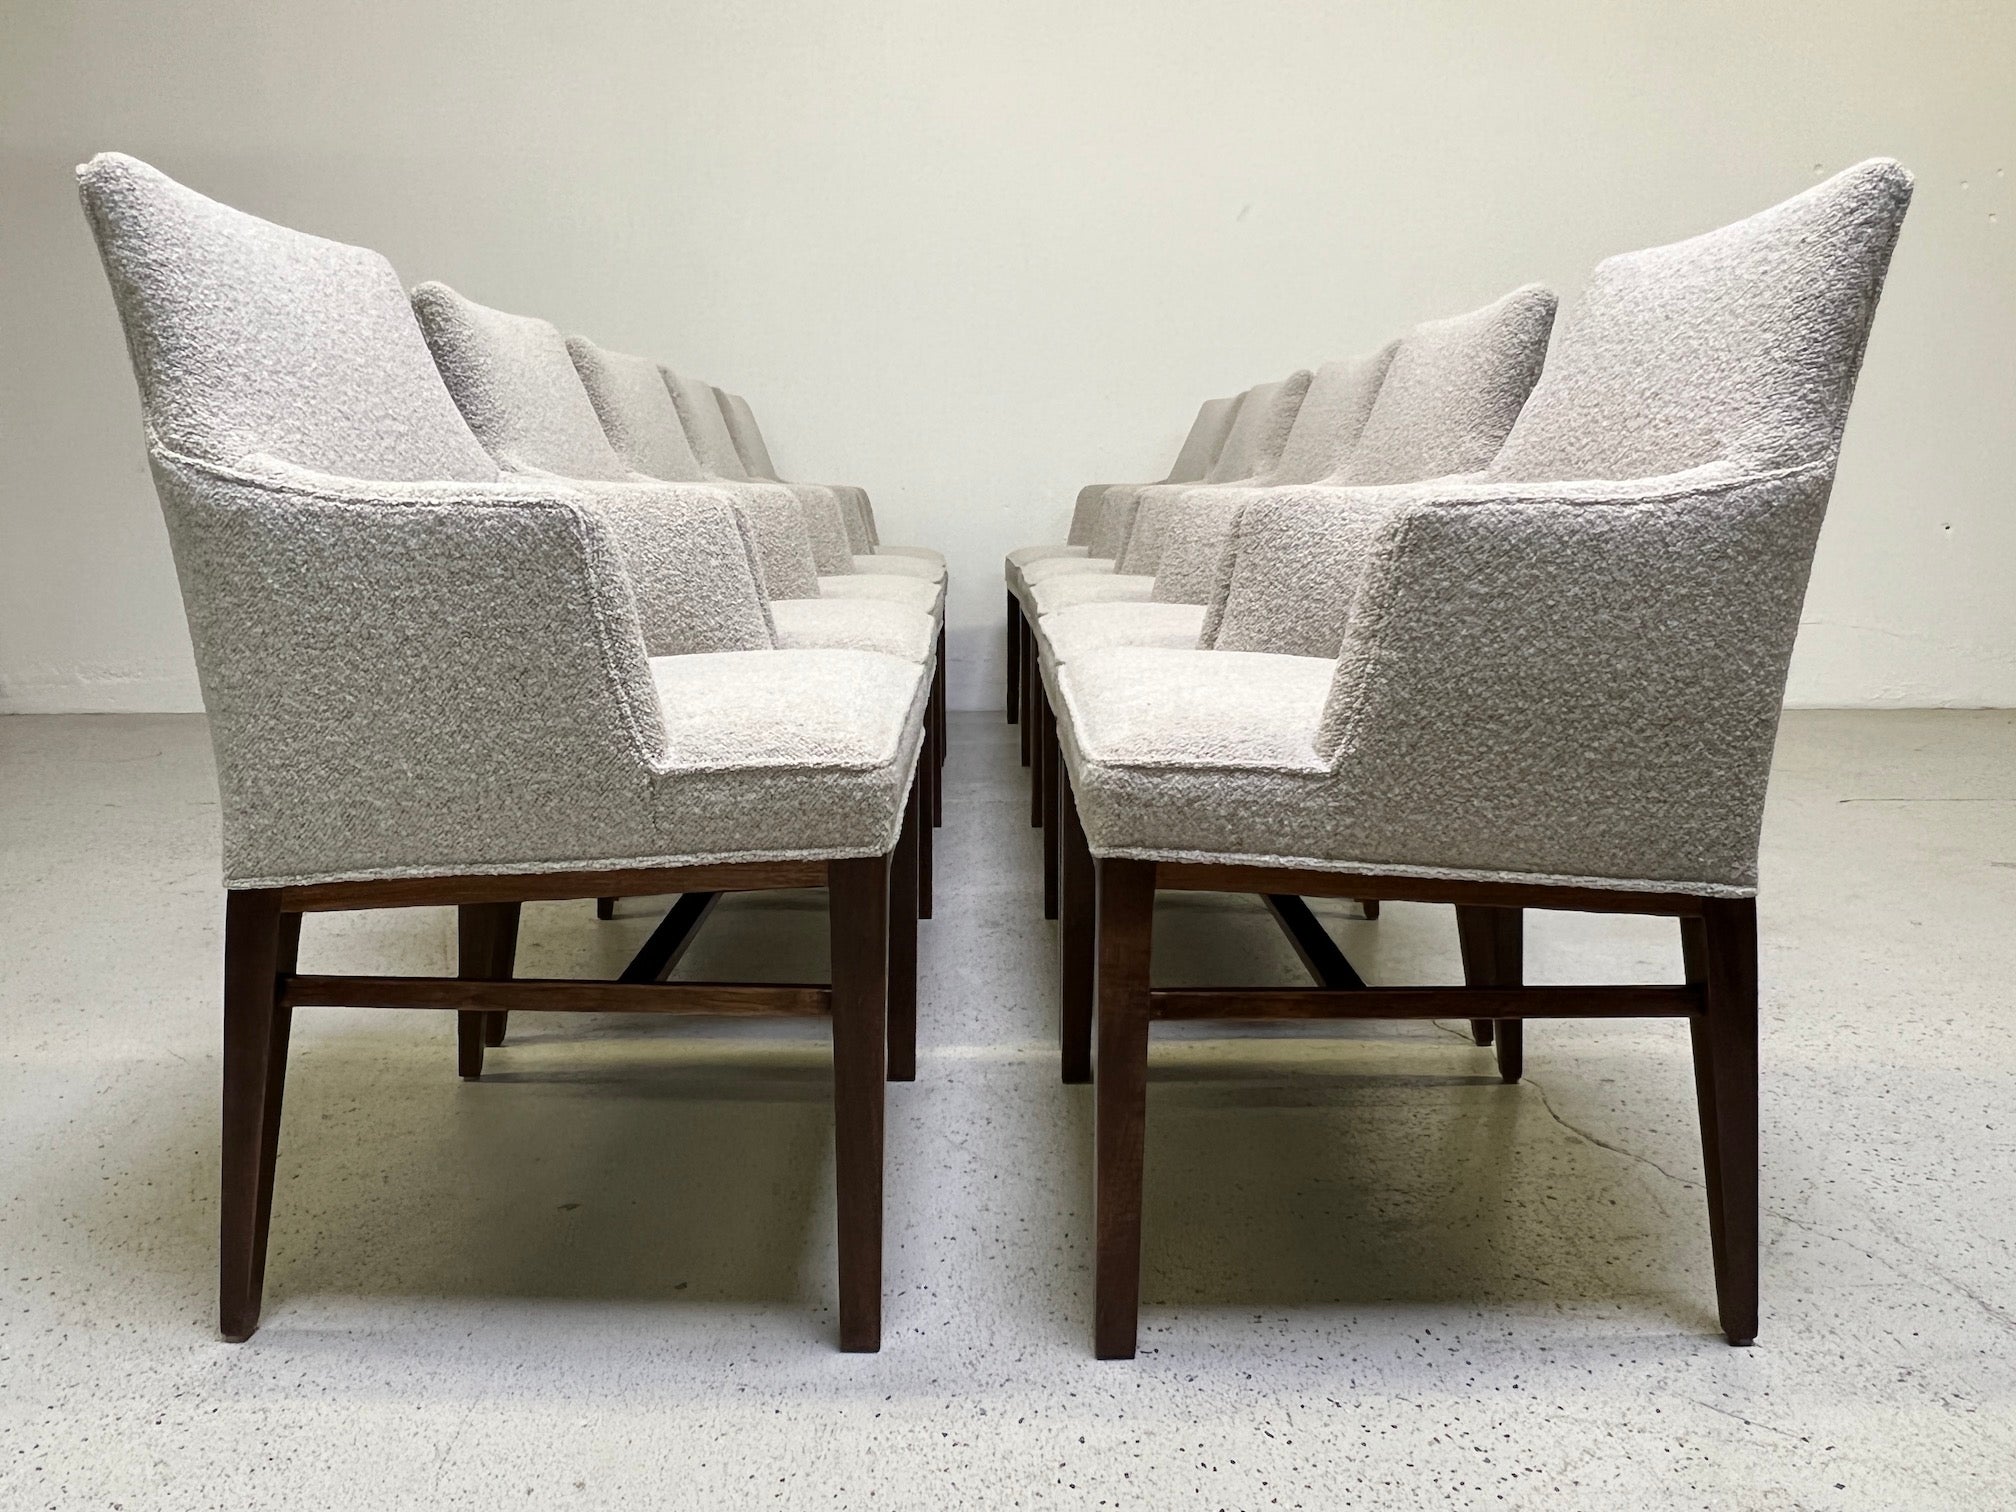 Un ensemble rare de dix fauteuils conçus par Edward Wormley pour Dunbar. Entièrement restauré, avec des bases en noyer raffiné et tapissé en tissu Designtex / Lambert.